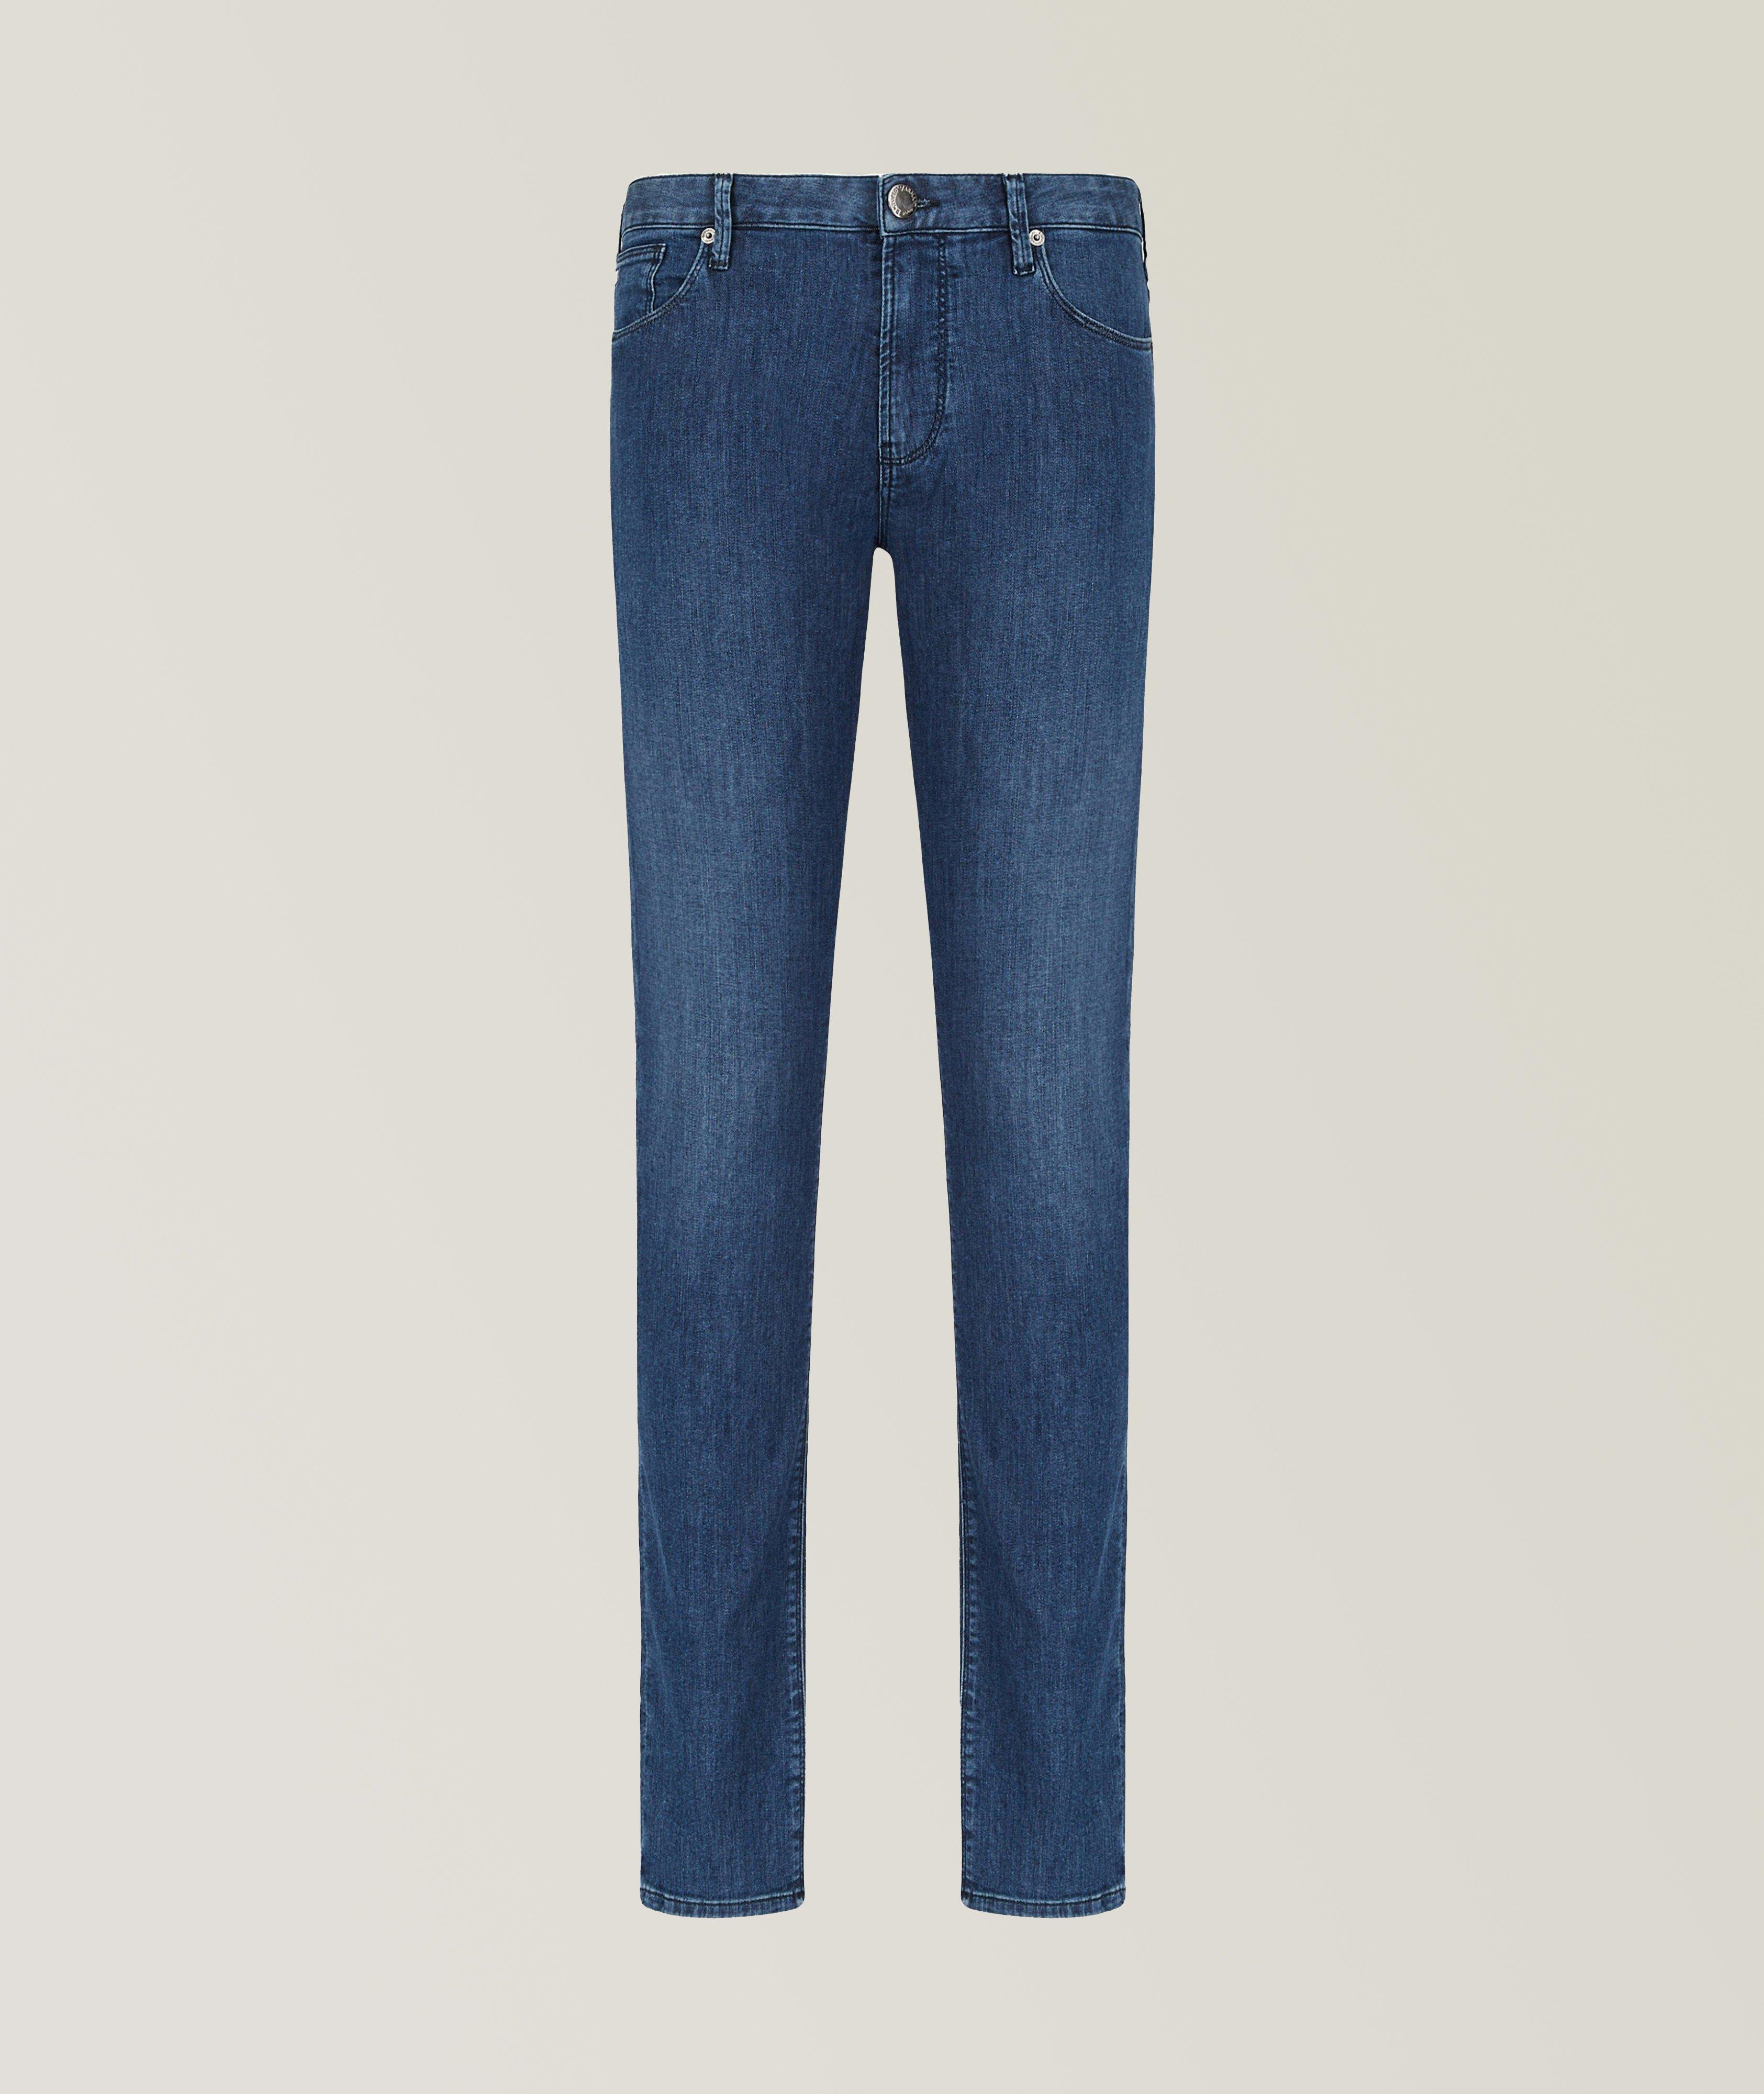 J06 Slim-Fit Cotton-Blend Jeans image 0